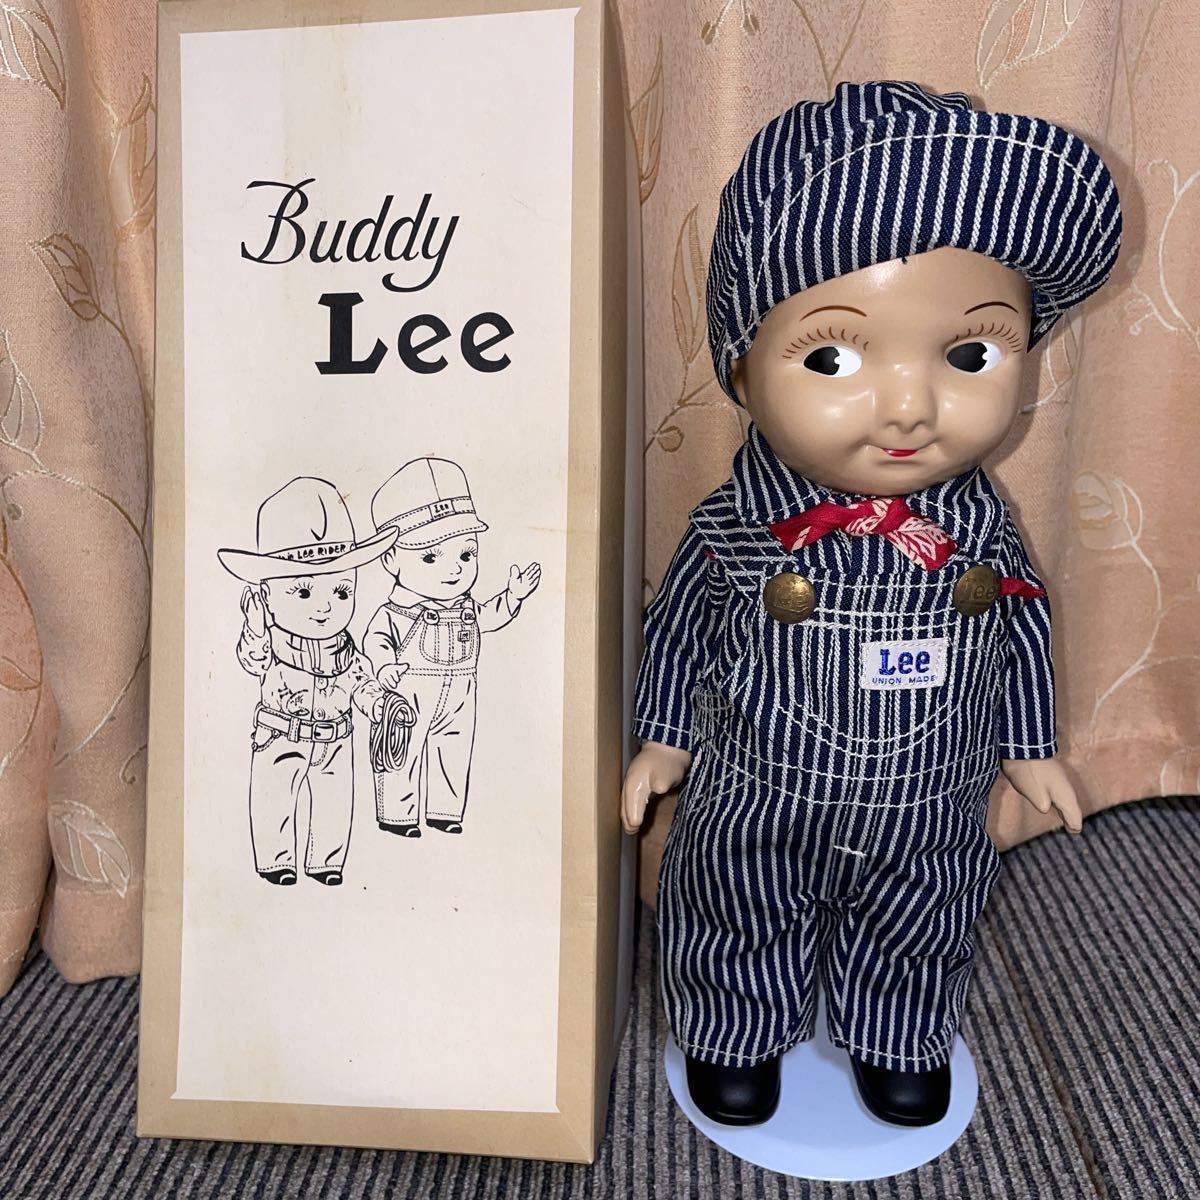 ヤフオク! -「buddy lee 人形」の落札相場・落札価格